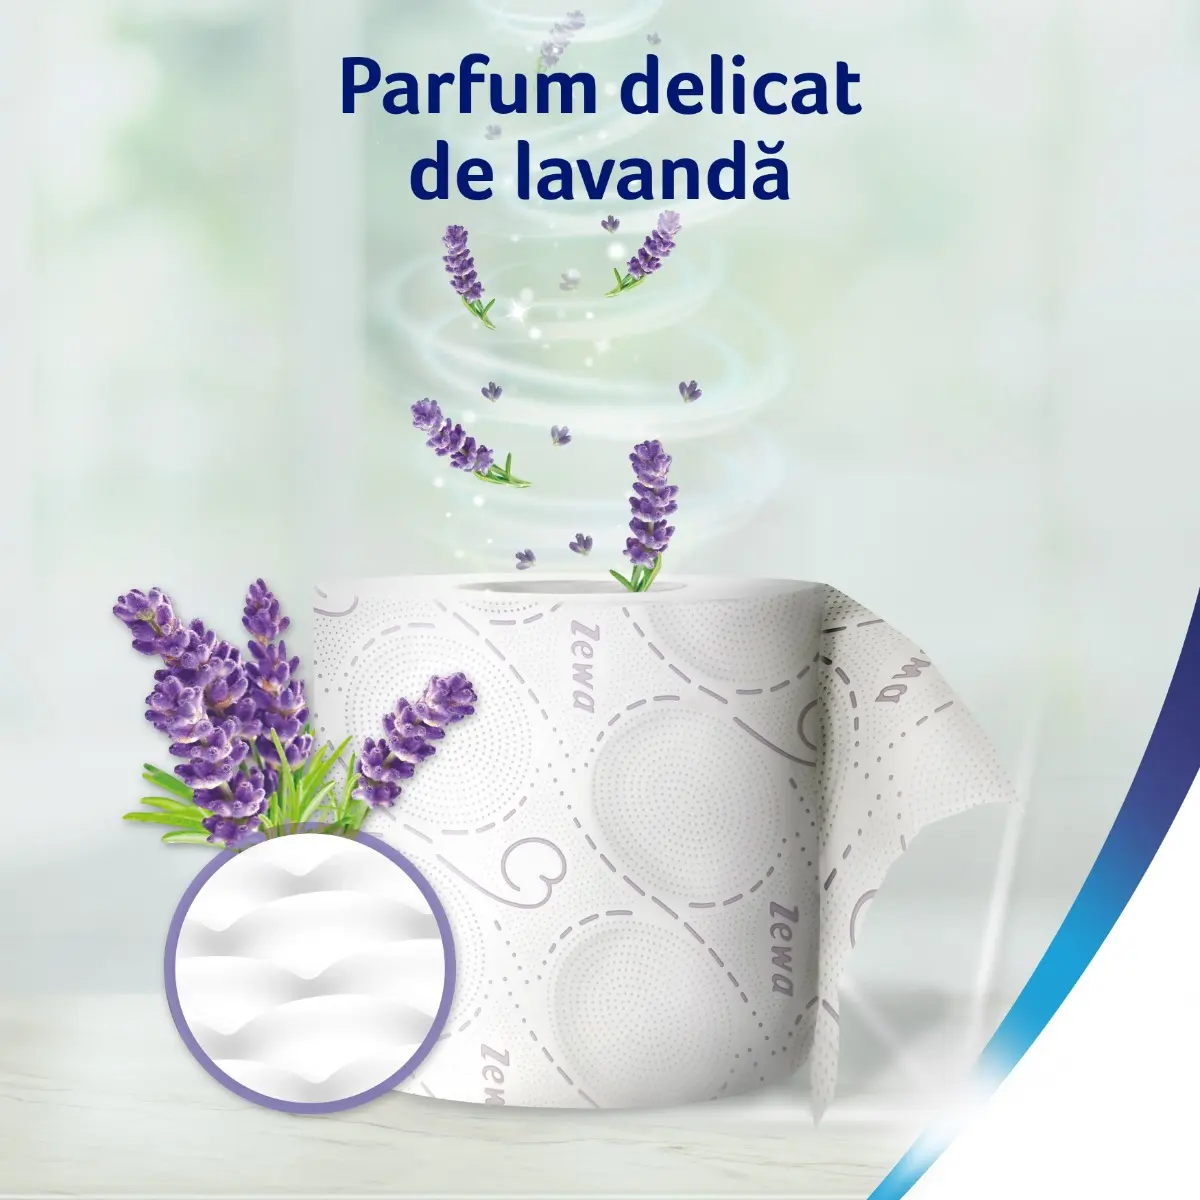 Hartie igienica Zewa Deluxe Lavender dreams, 3 straturi, 10 role